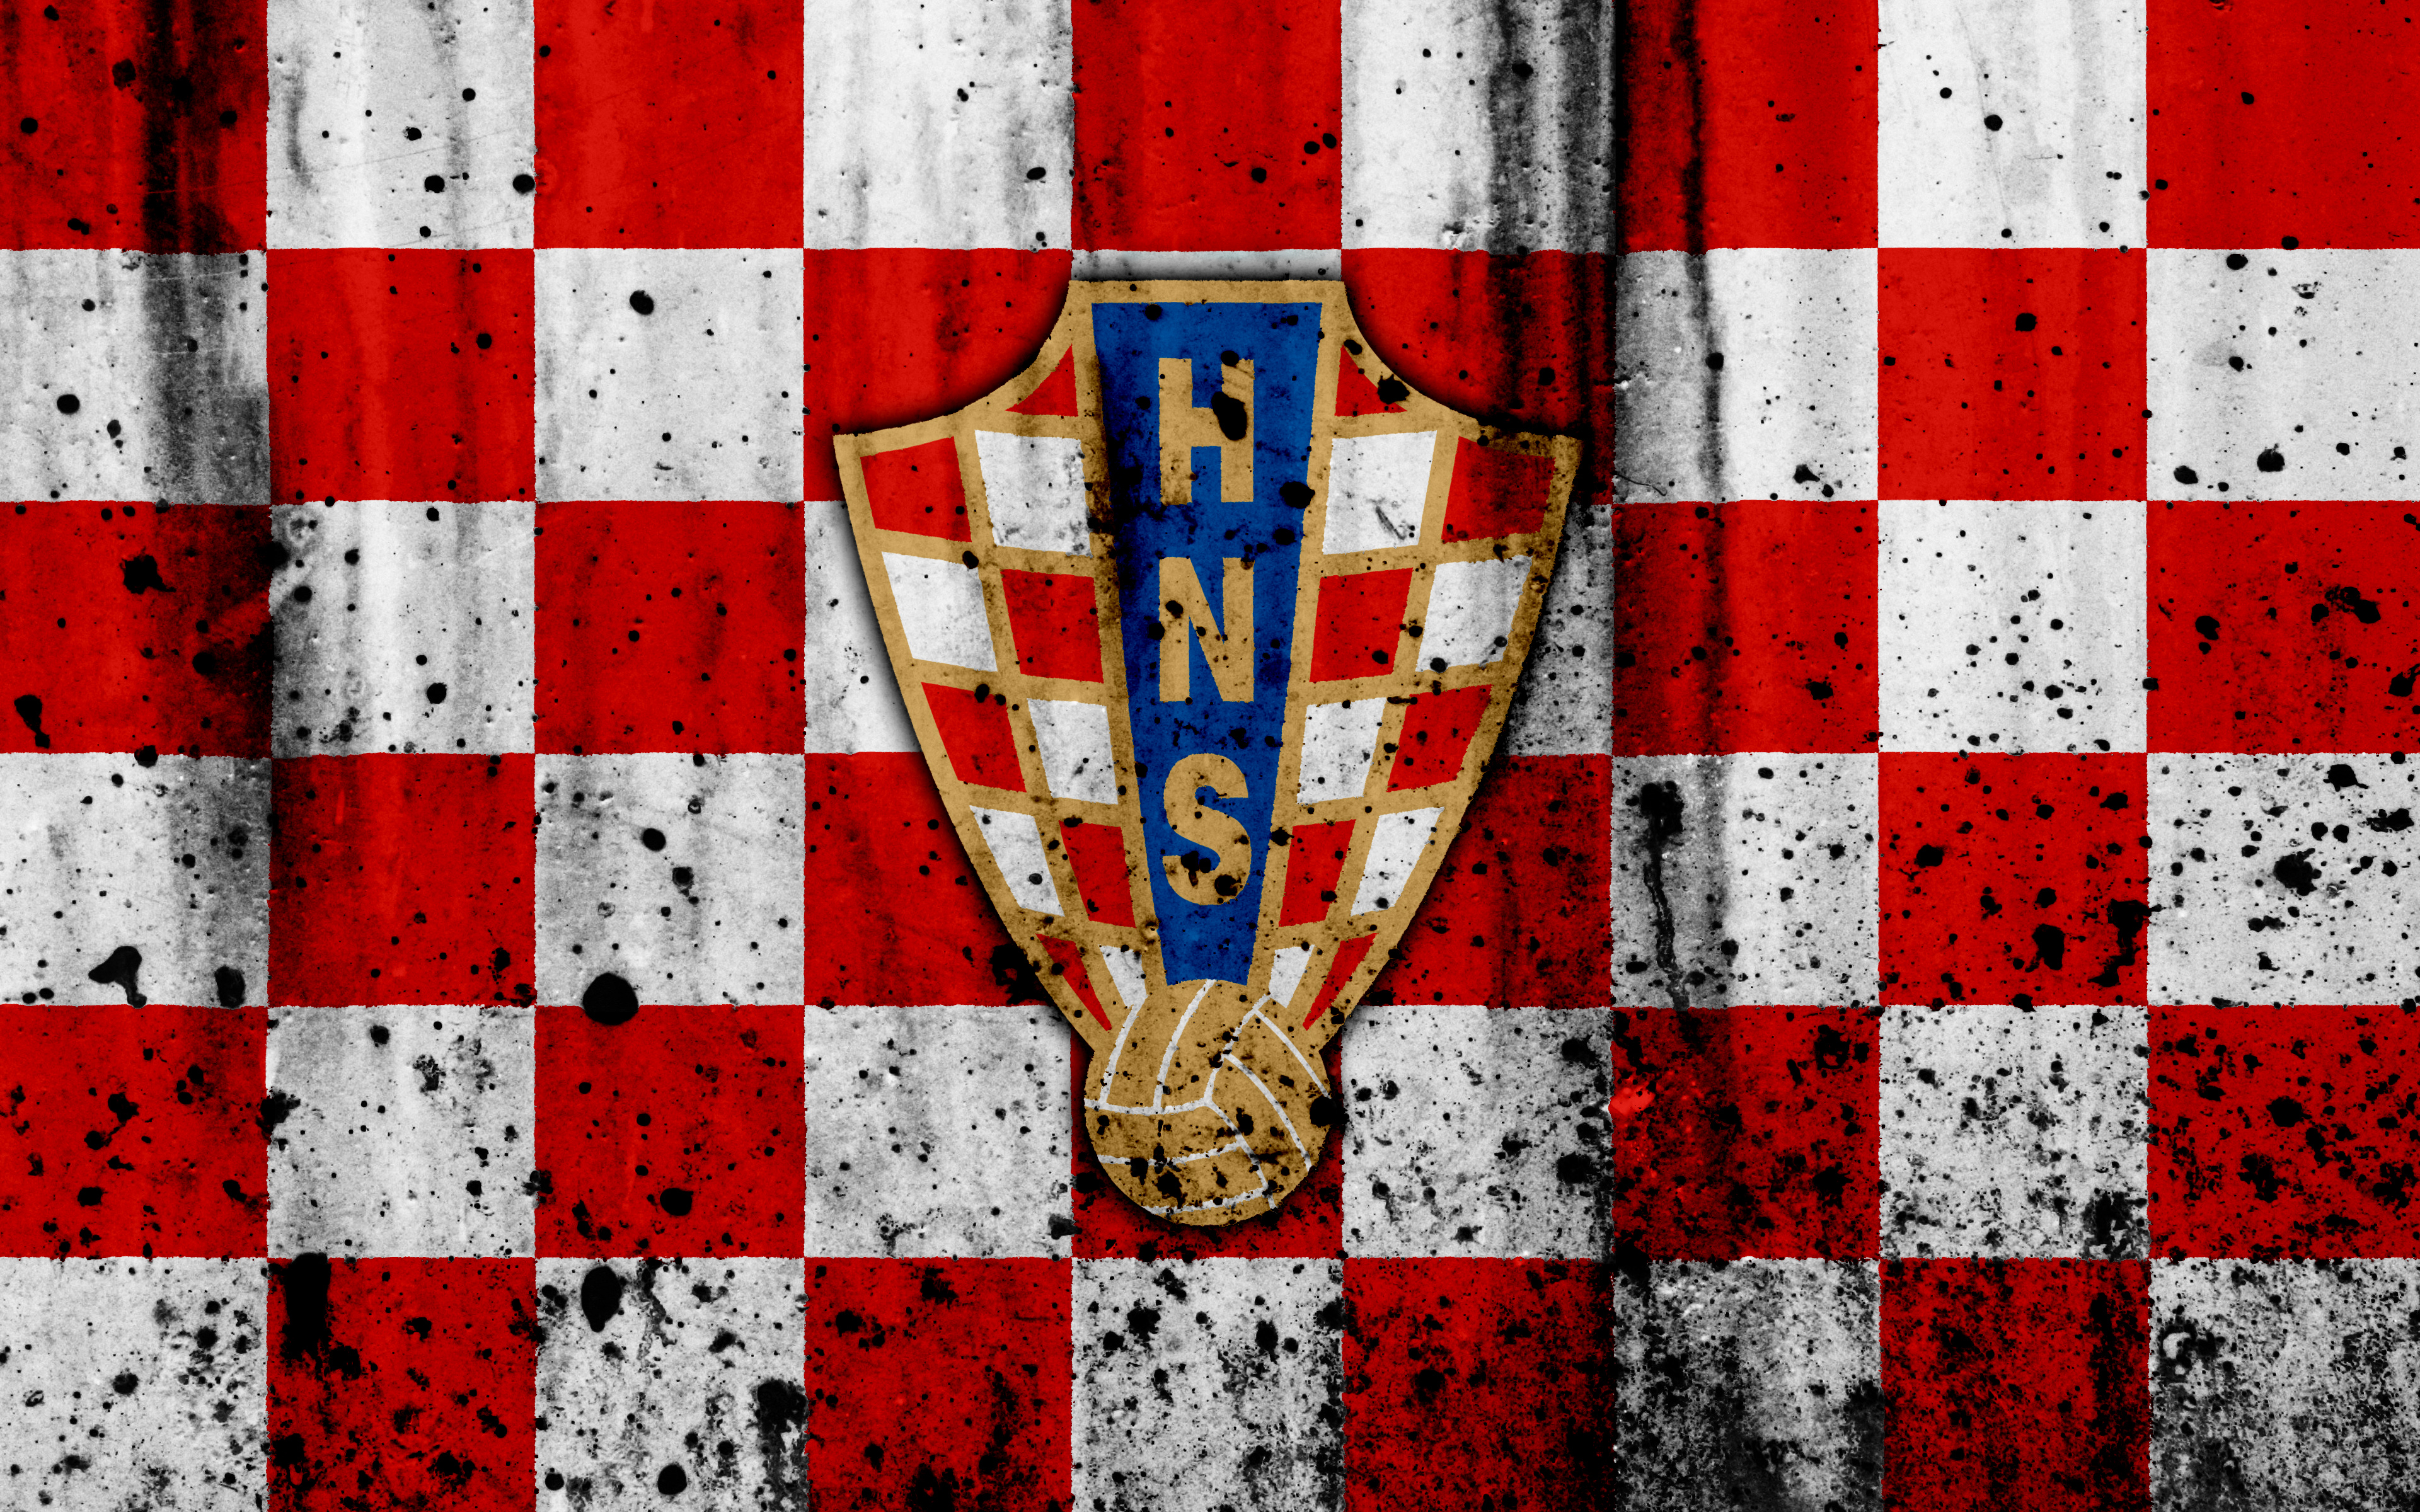 Скачать обои Сборная Хорватии По Футболу на телефон бесплатно